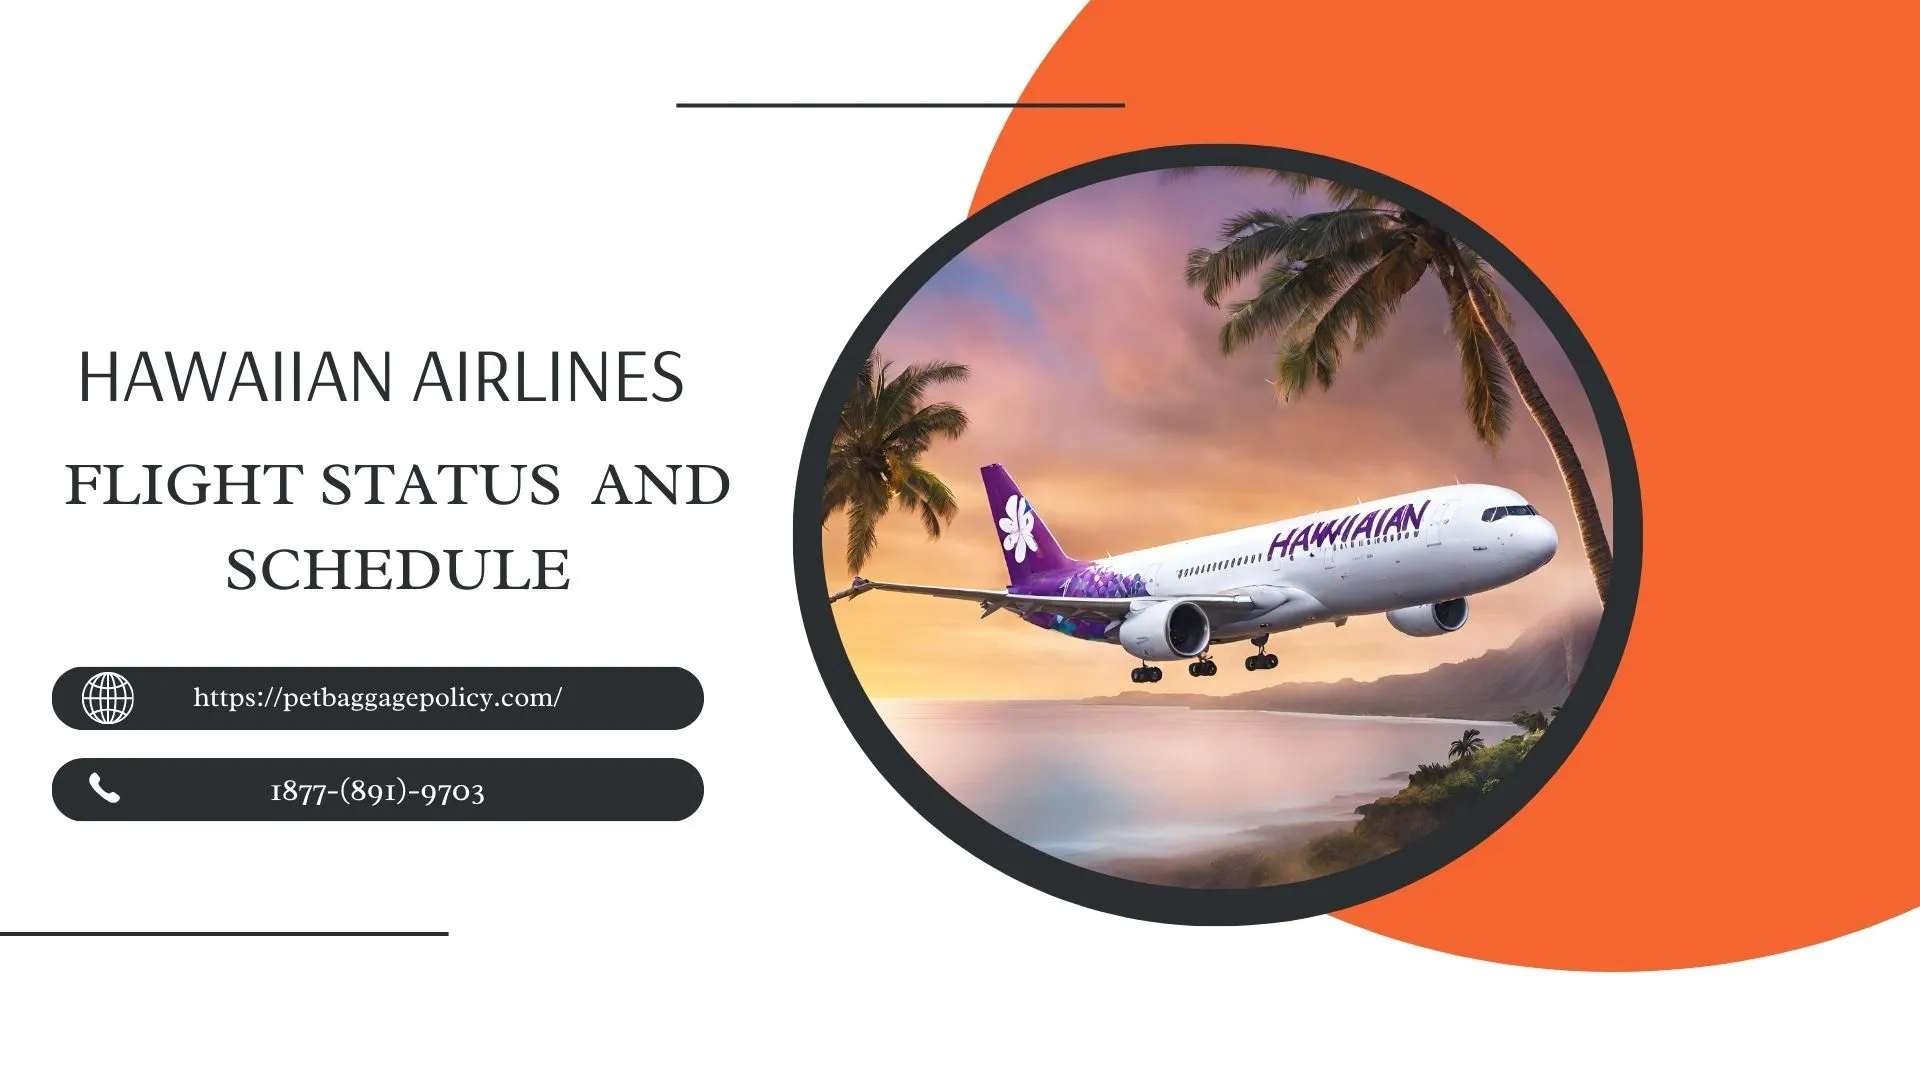 Hawaiian Airlines Flight Status and Schedule